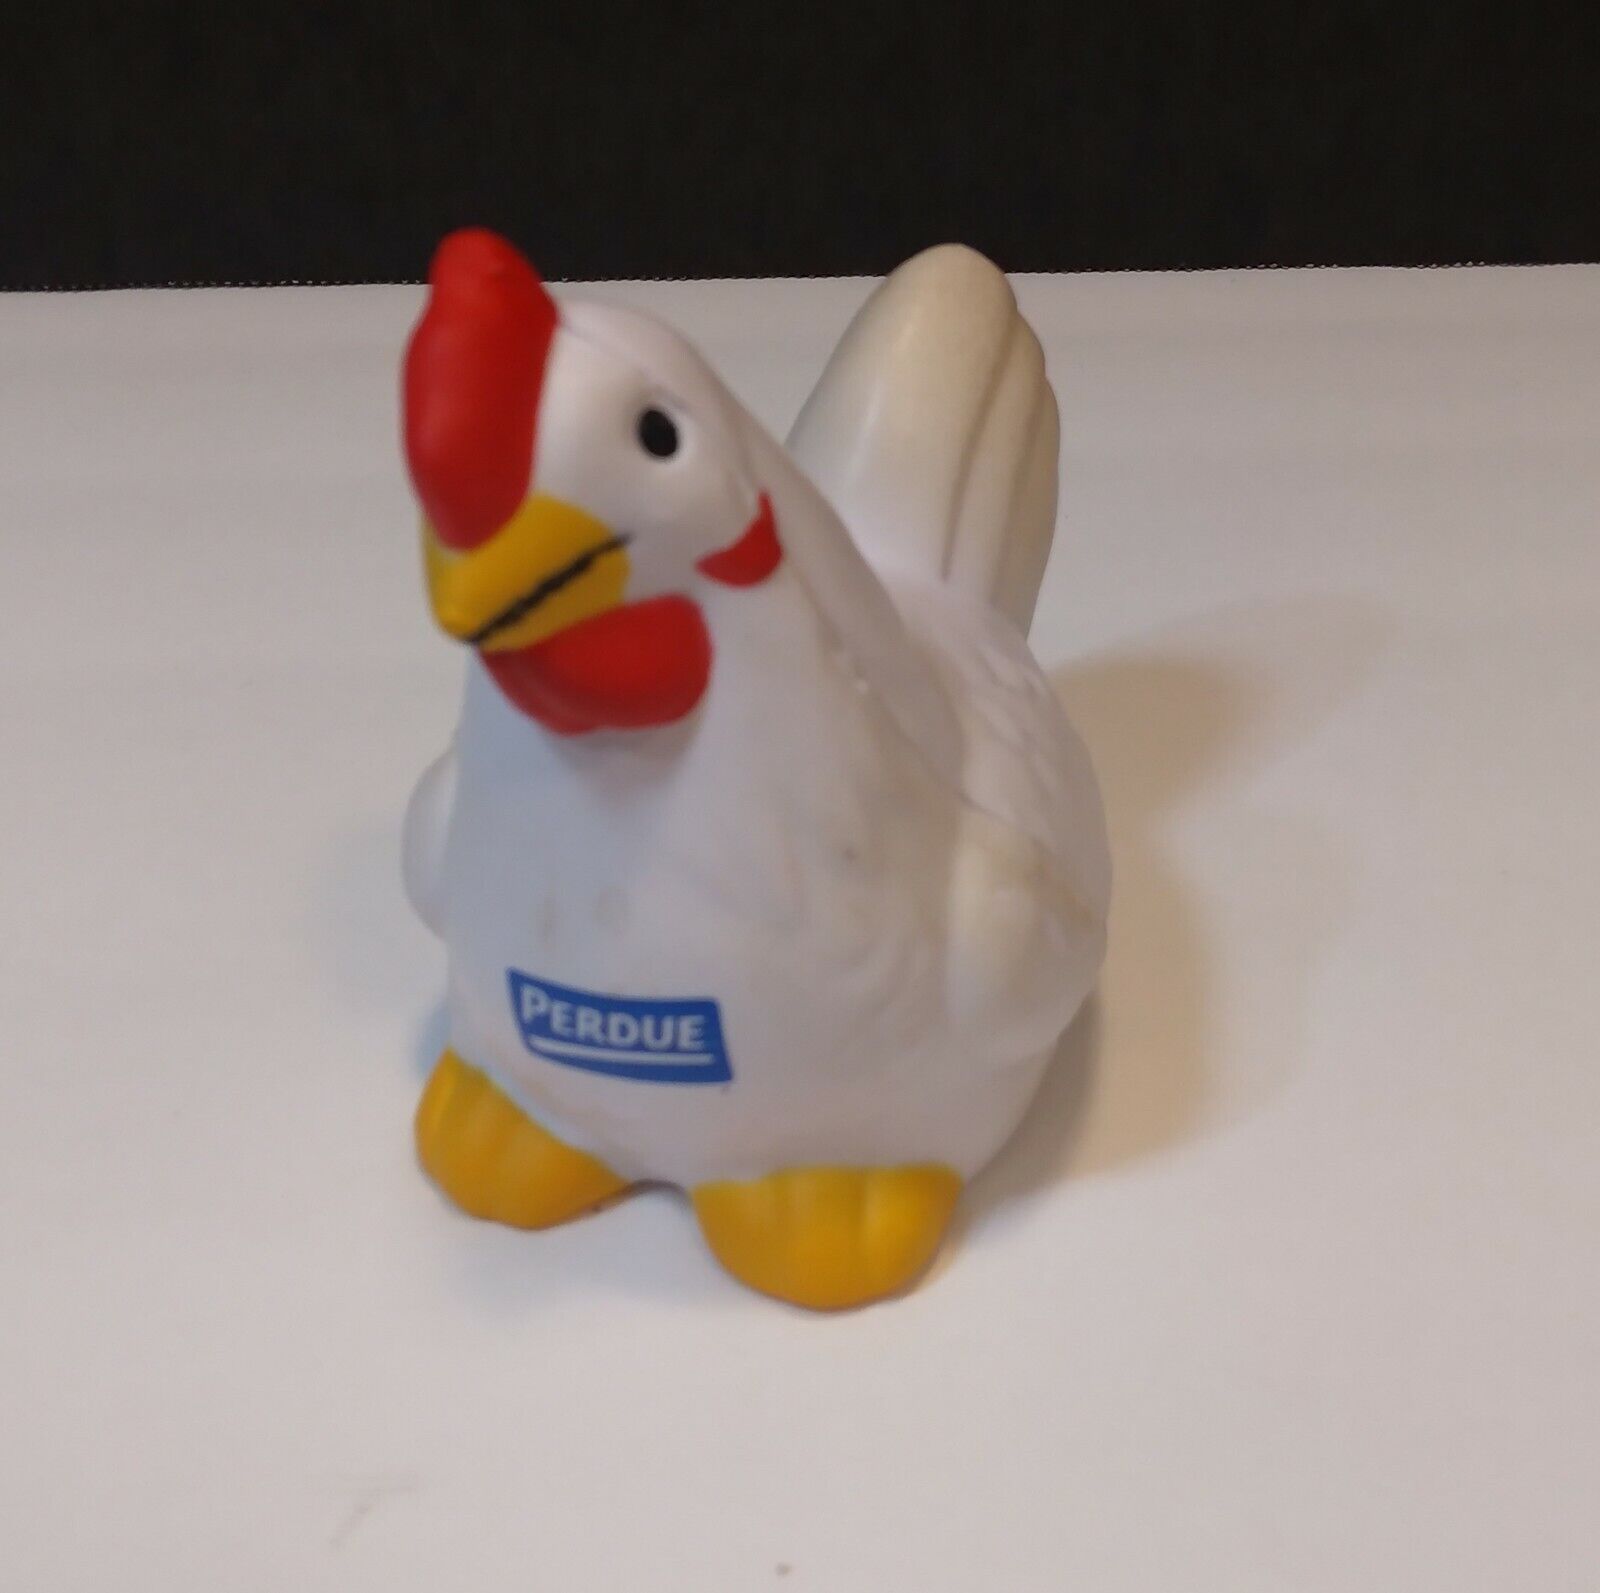 Perdue Foam Chicken Toy Rare